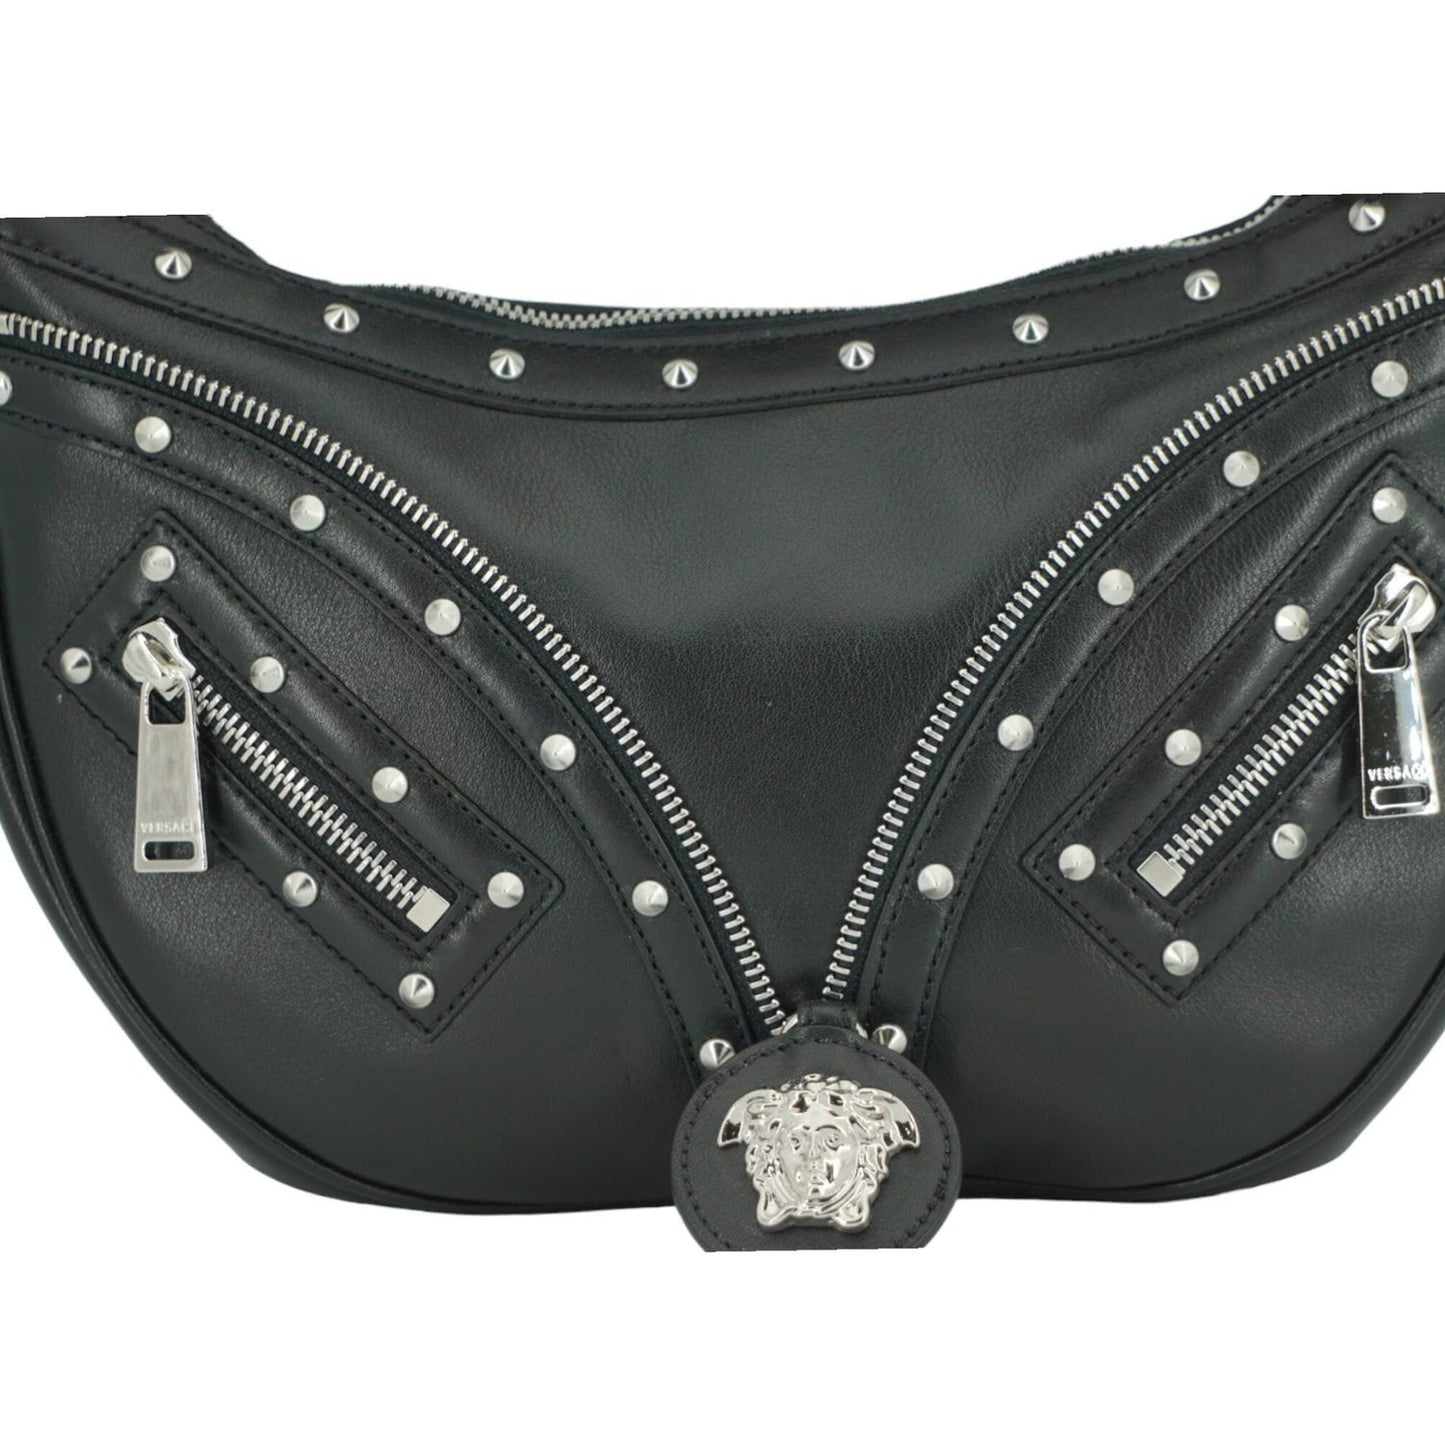 VersaceElegant Black Leather Hobo Shoulder BagMcRichard Designer Brands£1509.00